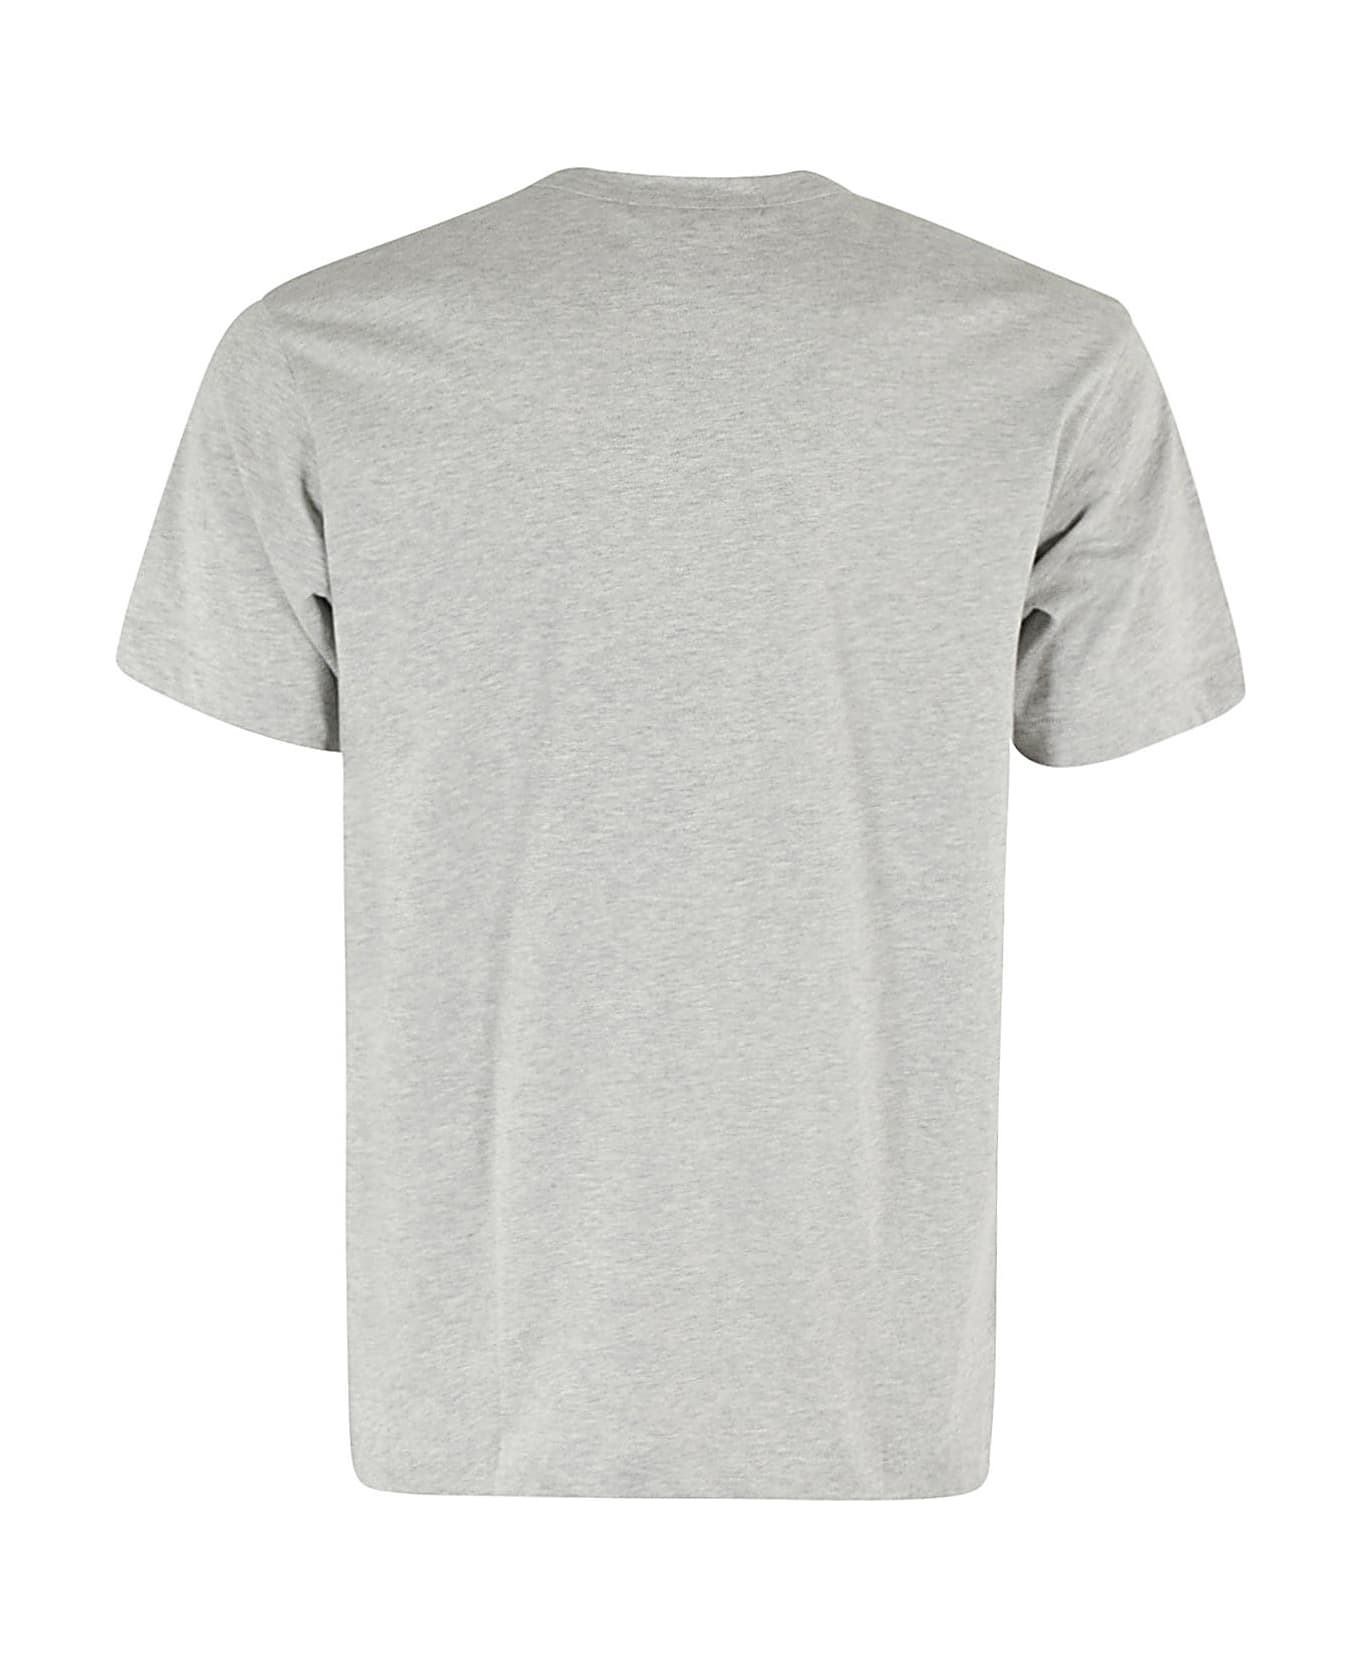 Comme des Garçons Shirt T Shirt Knit - Top Grey シャツ